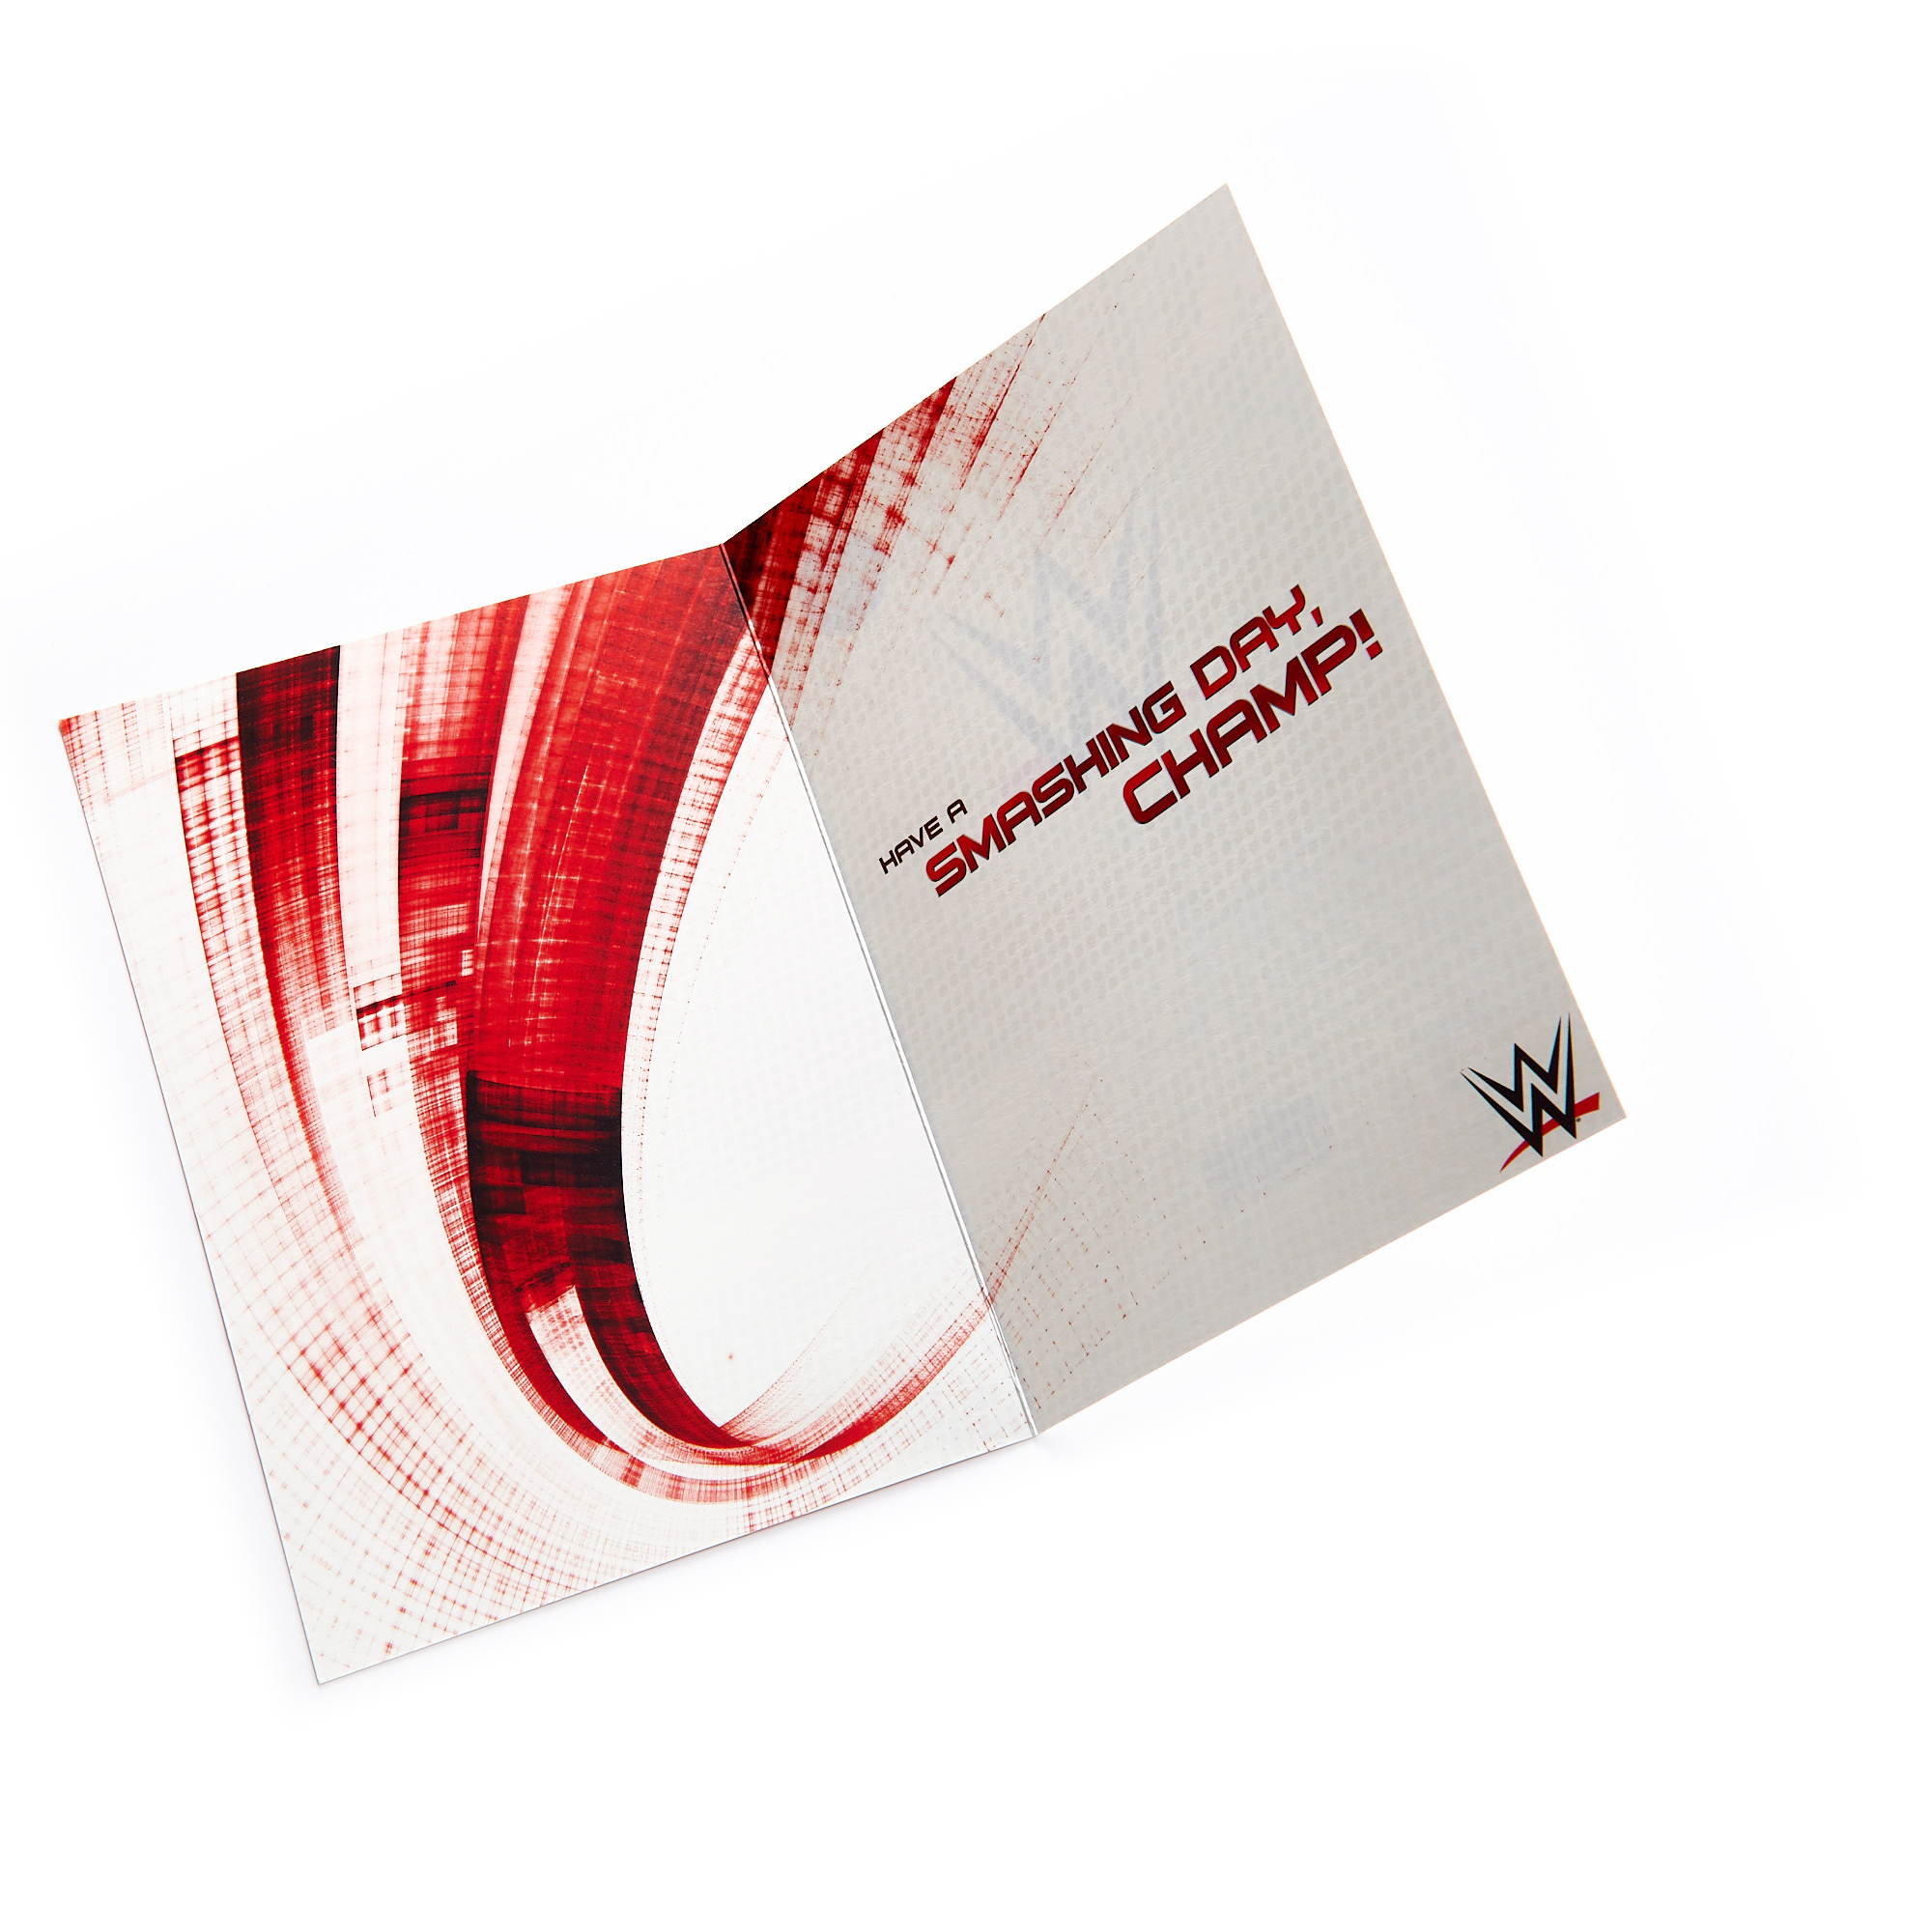 WWE 7th Birthday Card